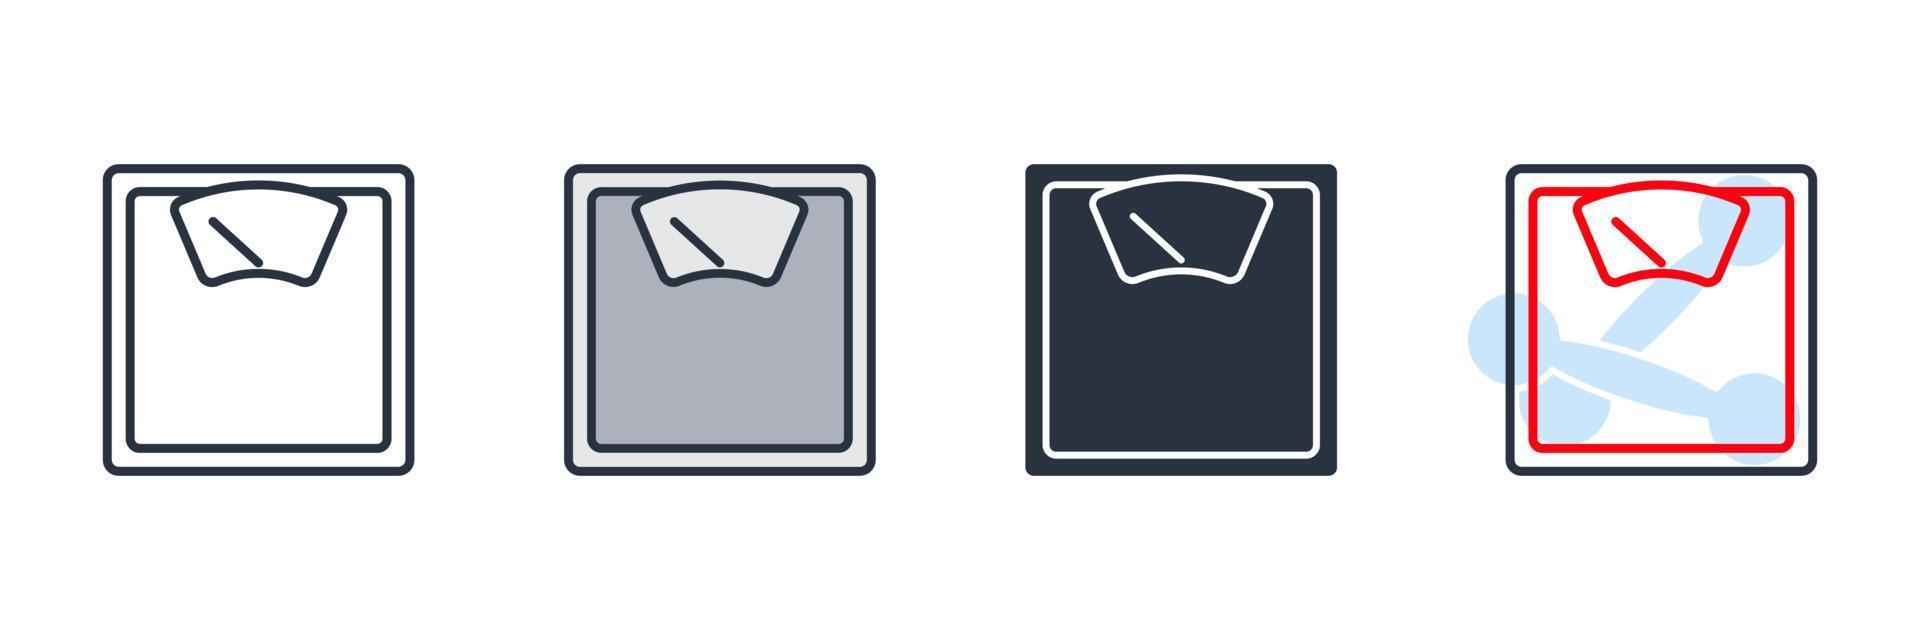 ilustração em vetor logotipo do ícone de escala de peso. modelo de símbolo de medição para coleção de design gráfico e web